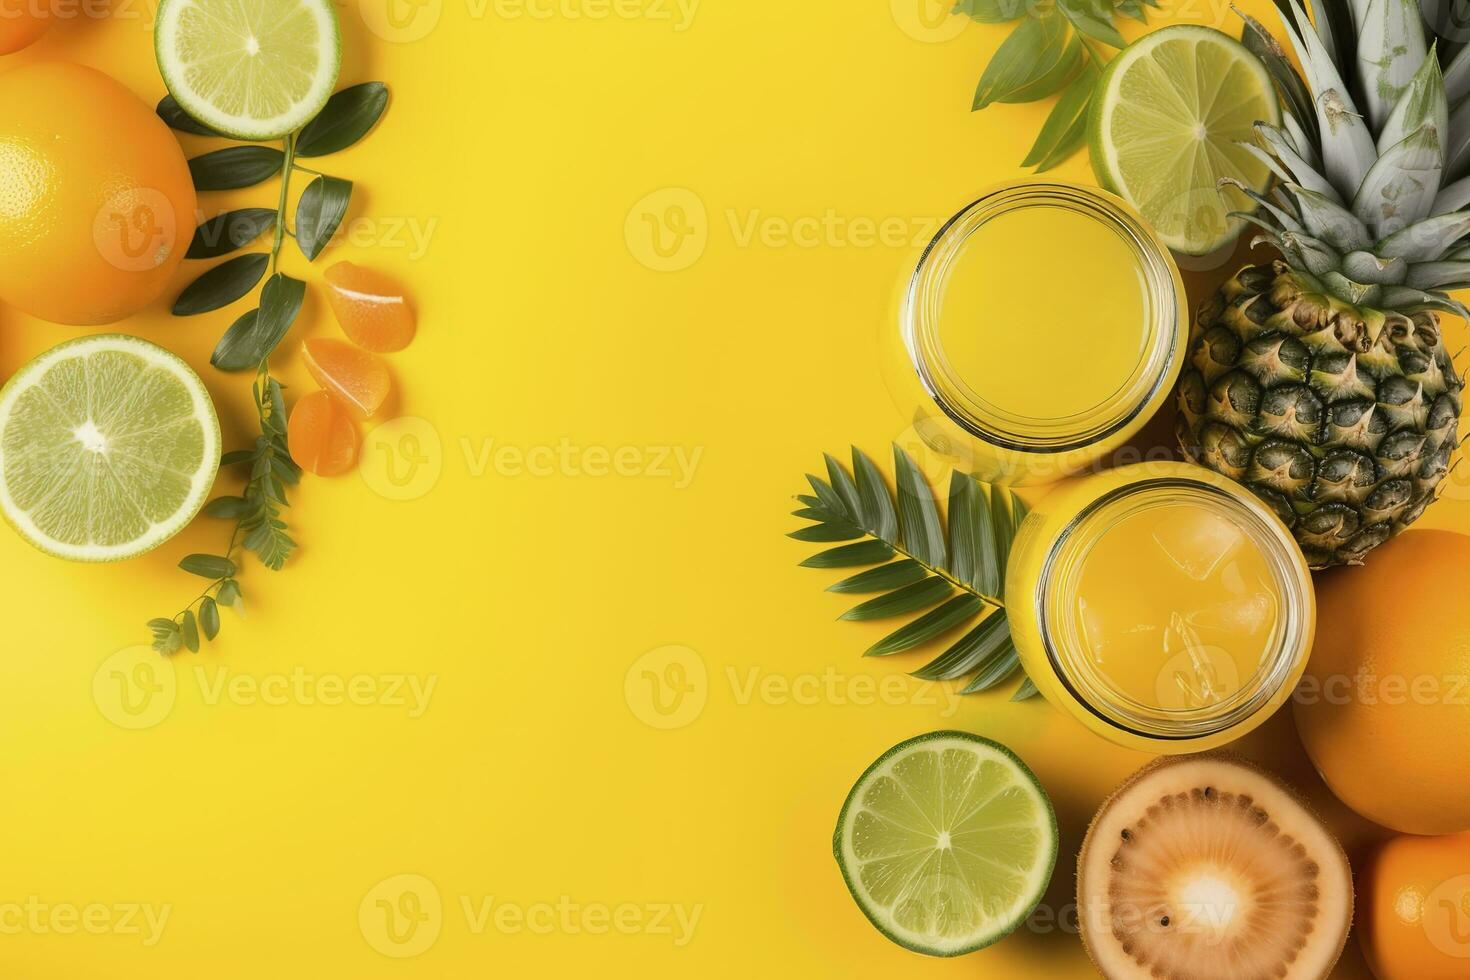 toevoegen een knal van kleur naar uw zomer afzet met deze levendig top visie vlak leggen foto van citrus sap cocktails in glas potten, ananas, oranje, kiwi reeks tegen een modieus geel achtergrond, genereren ai